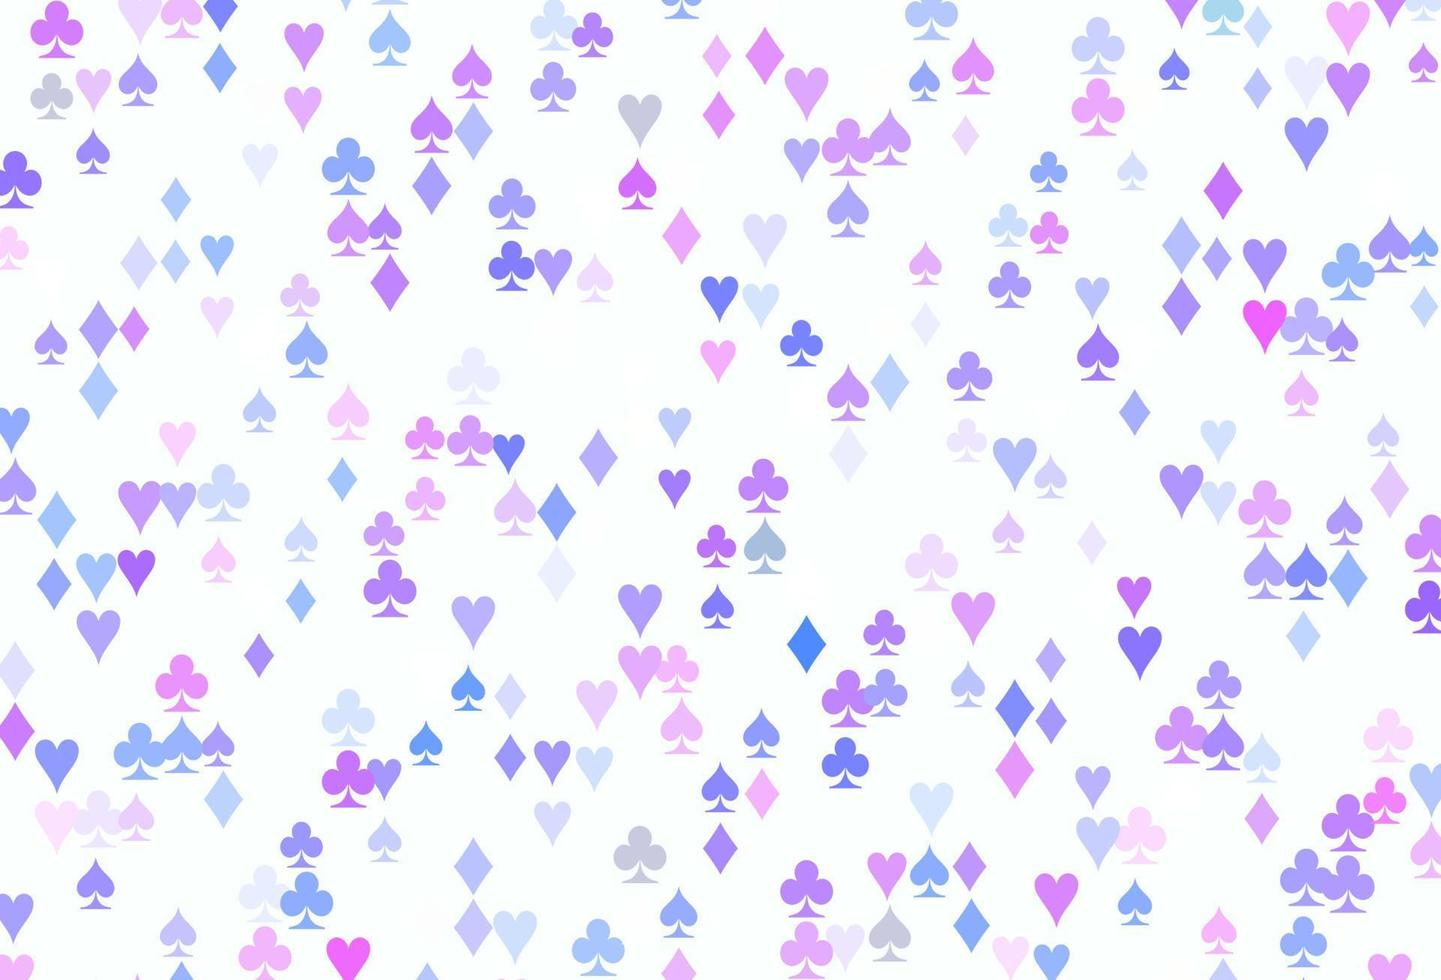 luz-de-rosa, azul padrão de vetor com símbolo de cartas.